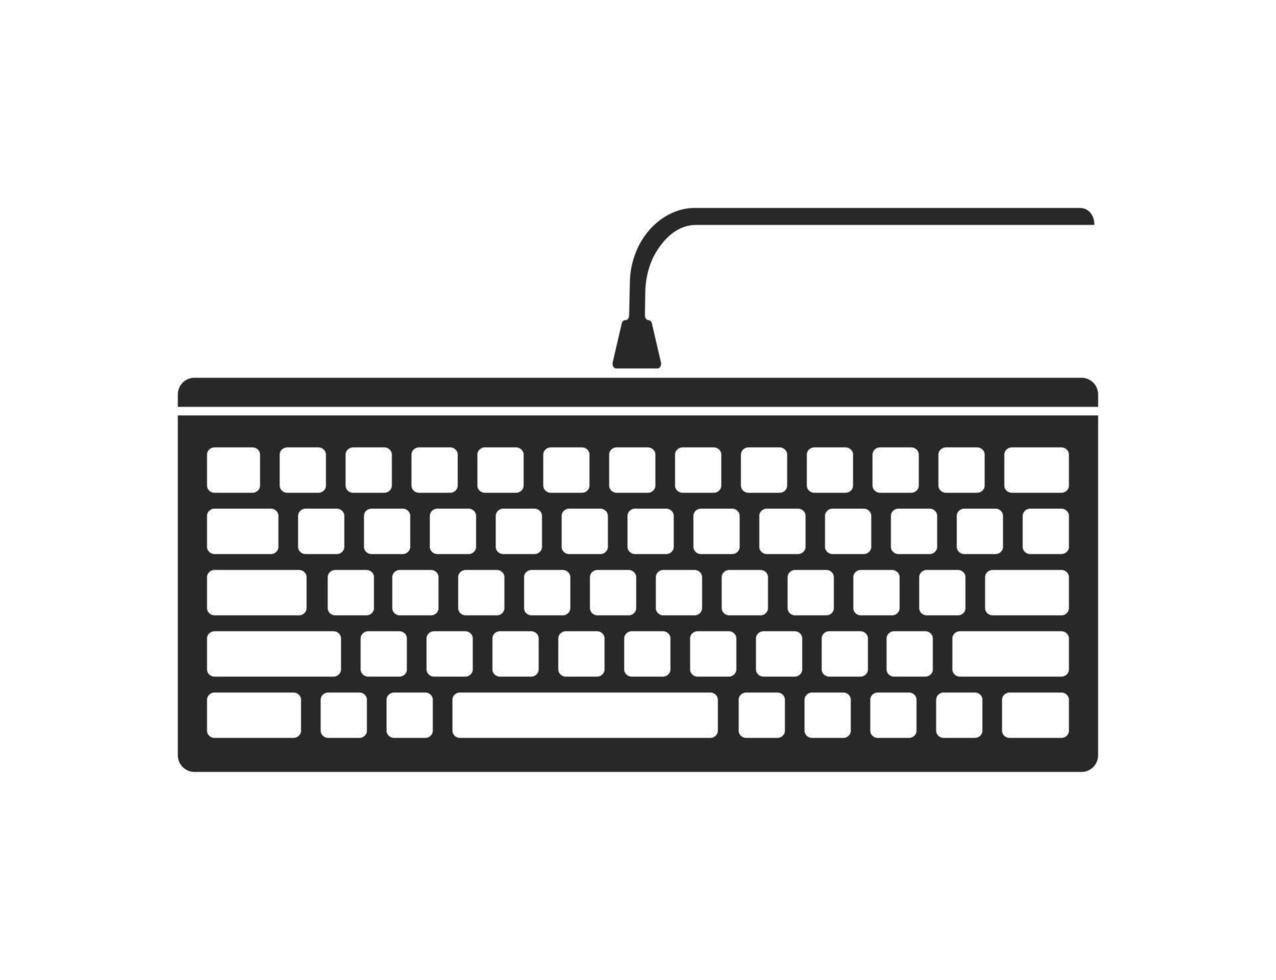 svart trådbunden tangentbord isolerat ikon vektor illustration